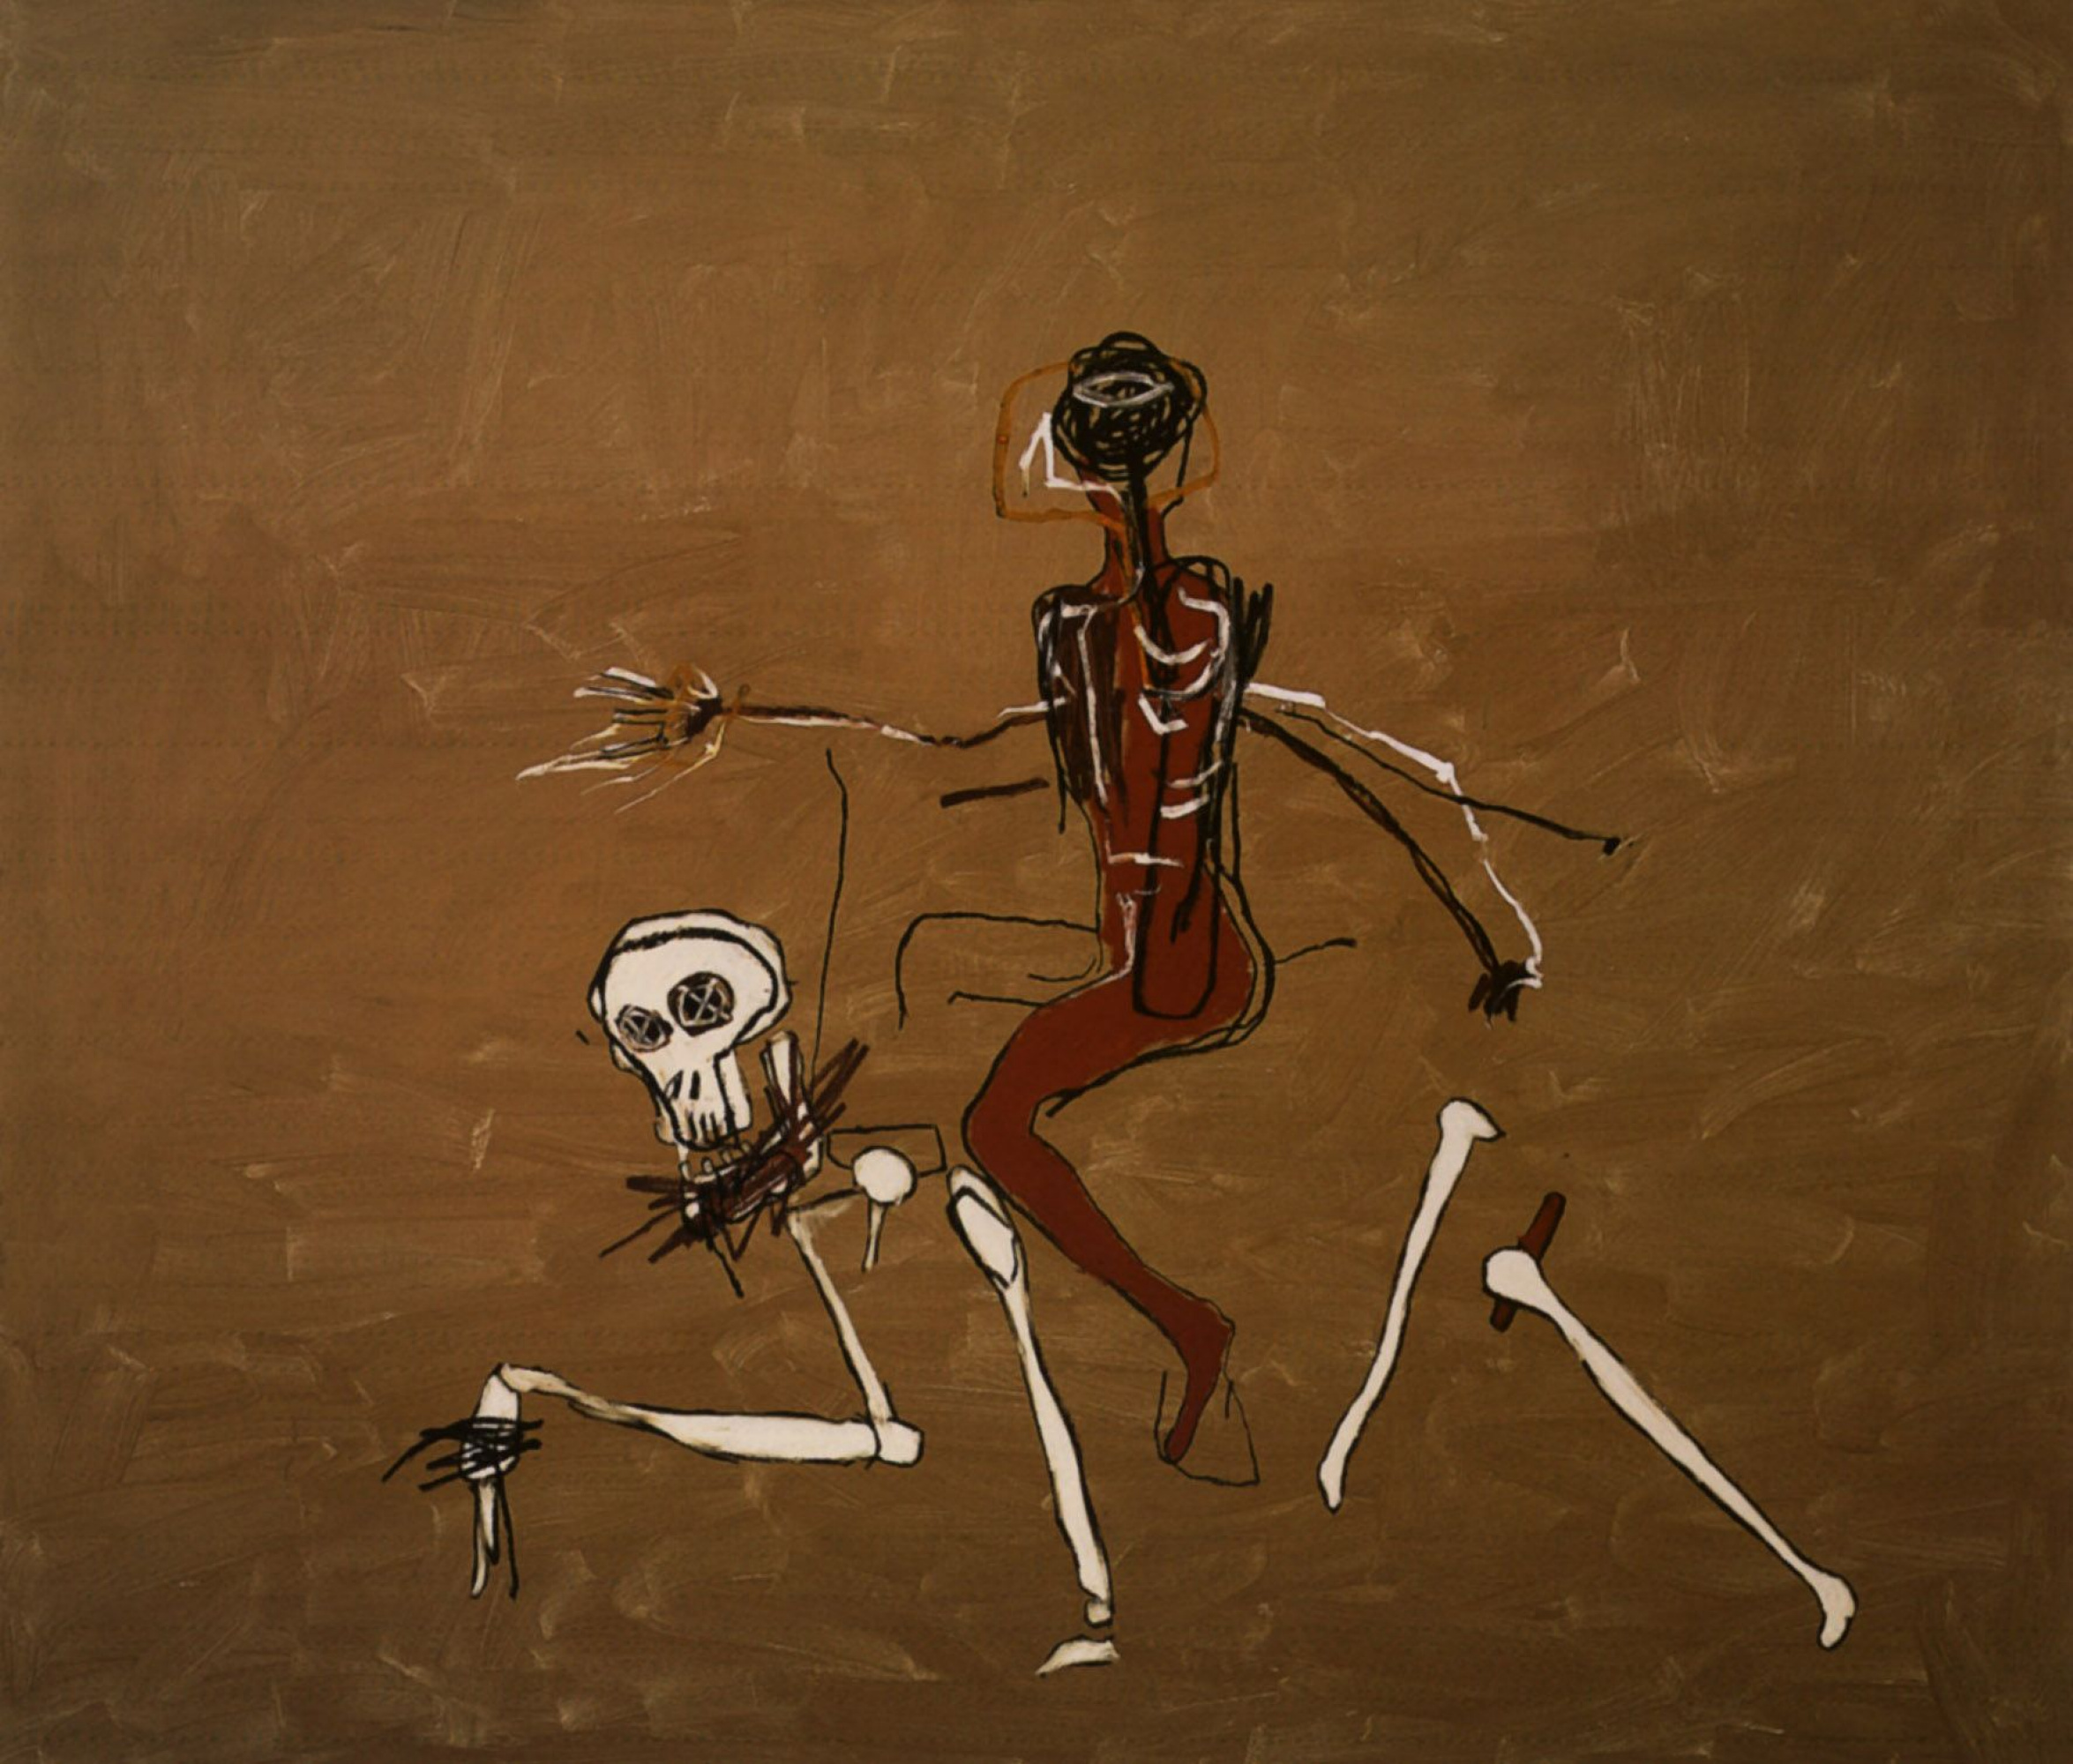 Riding on death (Верхом на смерти), 1988. Жан-Мишель Баския (Jean-Michel Basquiat) - американский художник. Неоэкспрессионизм